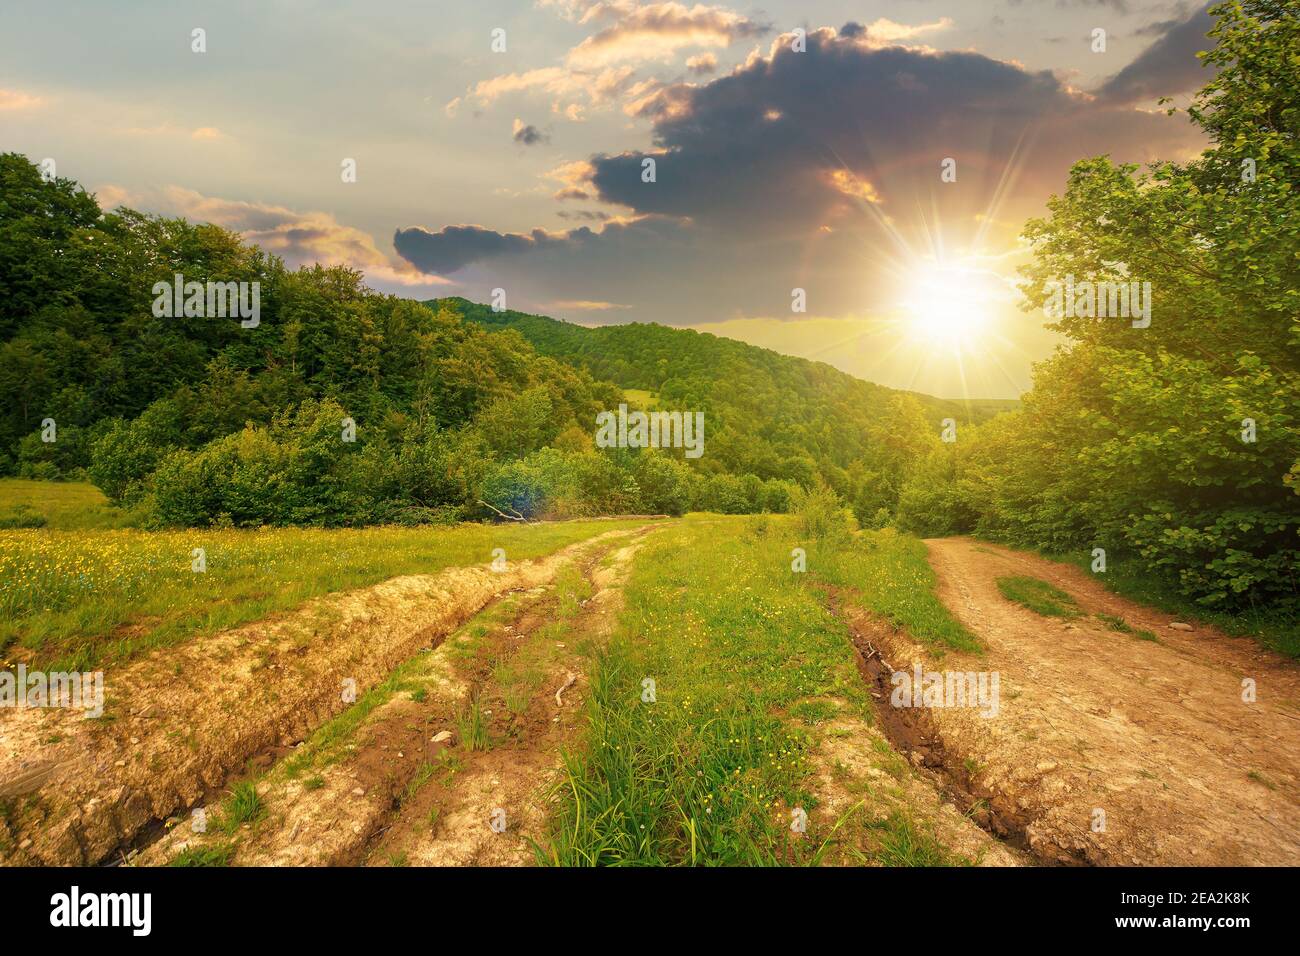 route de terre à travers la campagne boisée au coucher du soleil. magnifique paysage rural d'été dans les montagnes. aventure dans les paysages de la nature dans la lumière du soir Banque D'Images